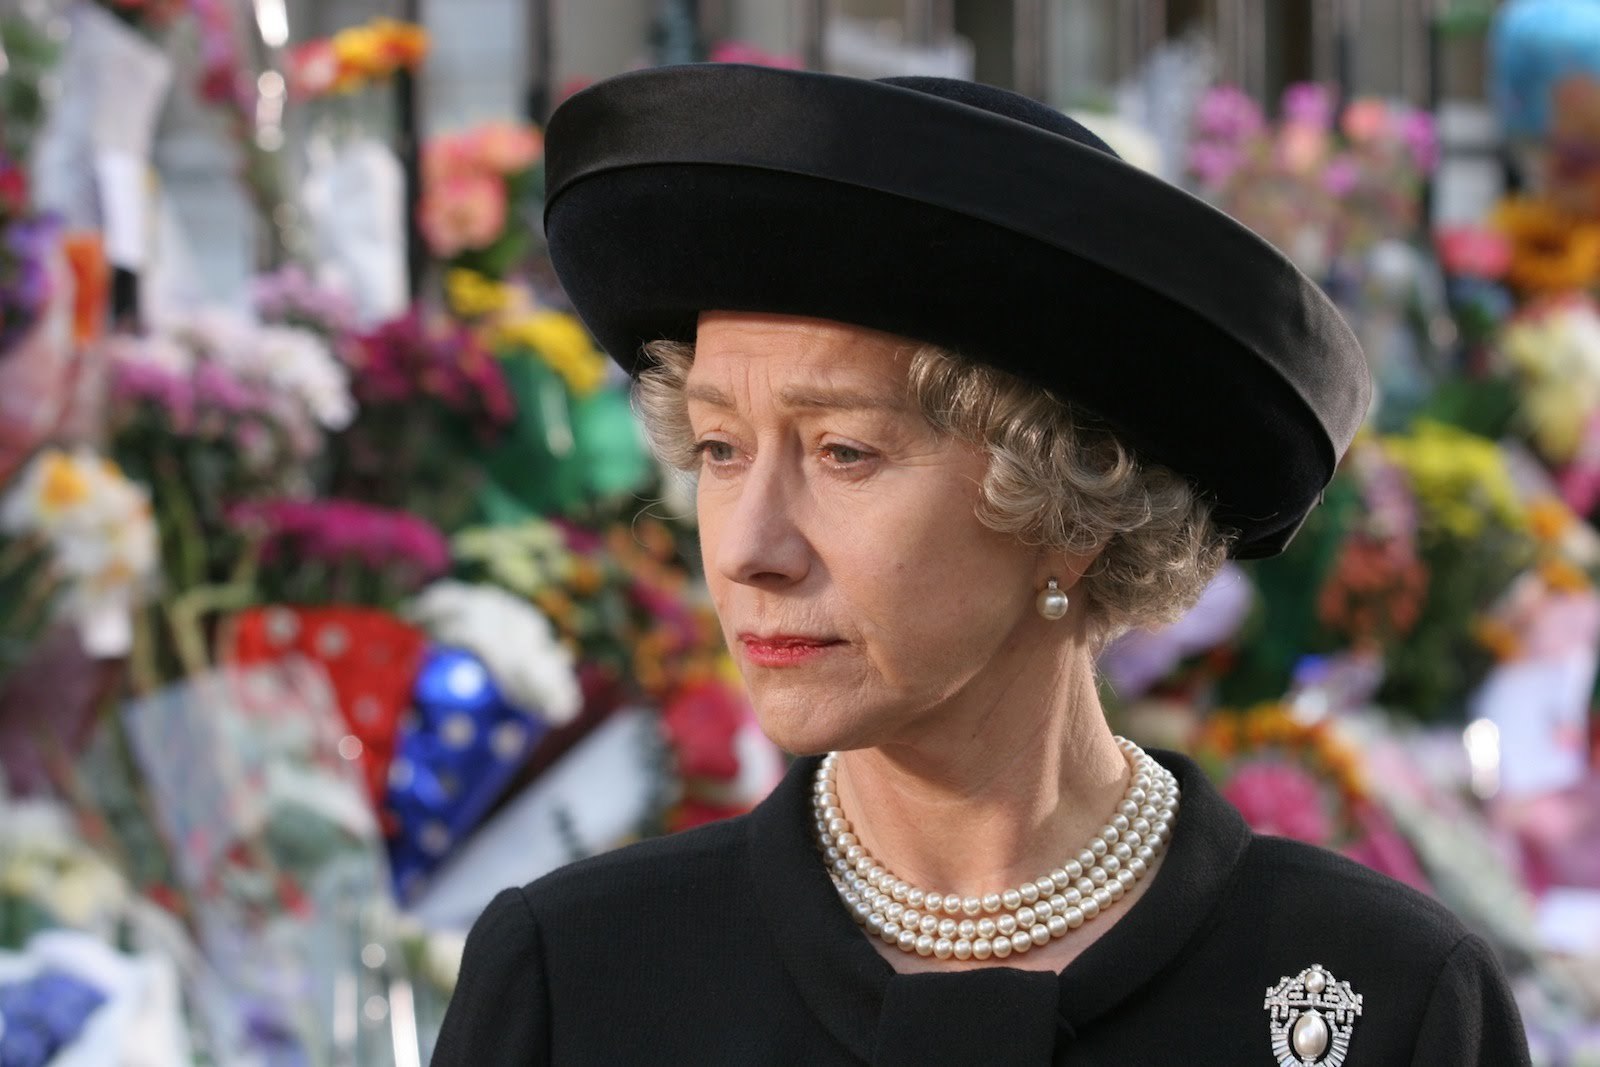 Helen Mirren played the lead role of Queen Elizabeth II in the 2006 movie The Queen.